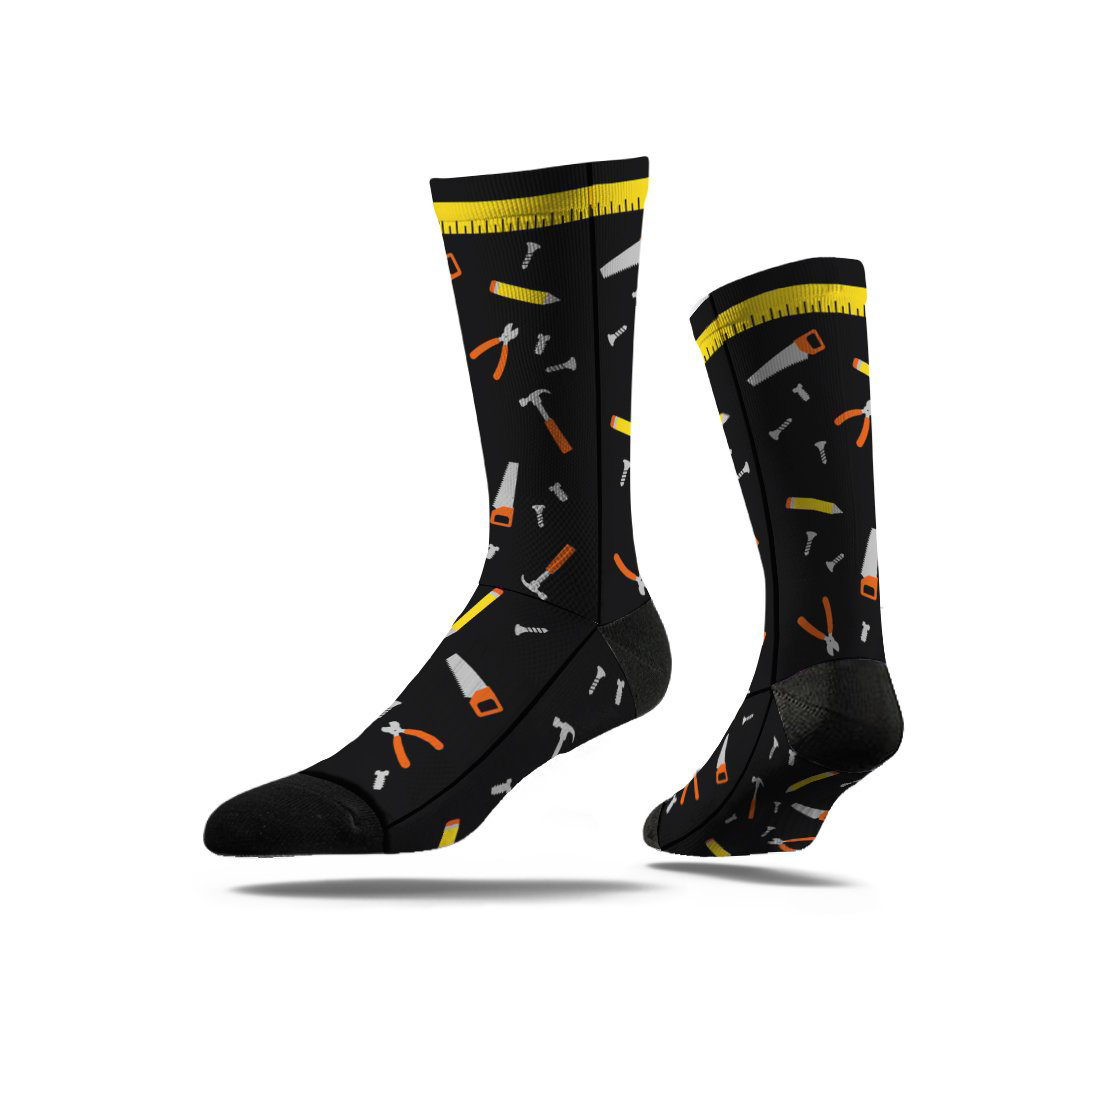 Full Sub Socks in full colour print